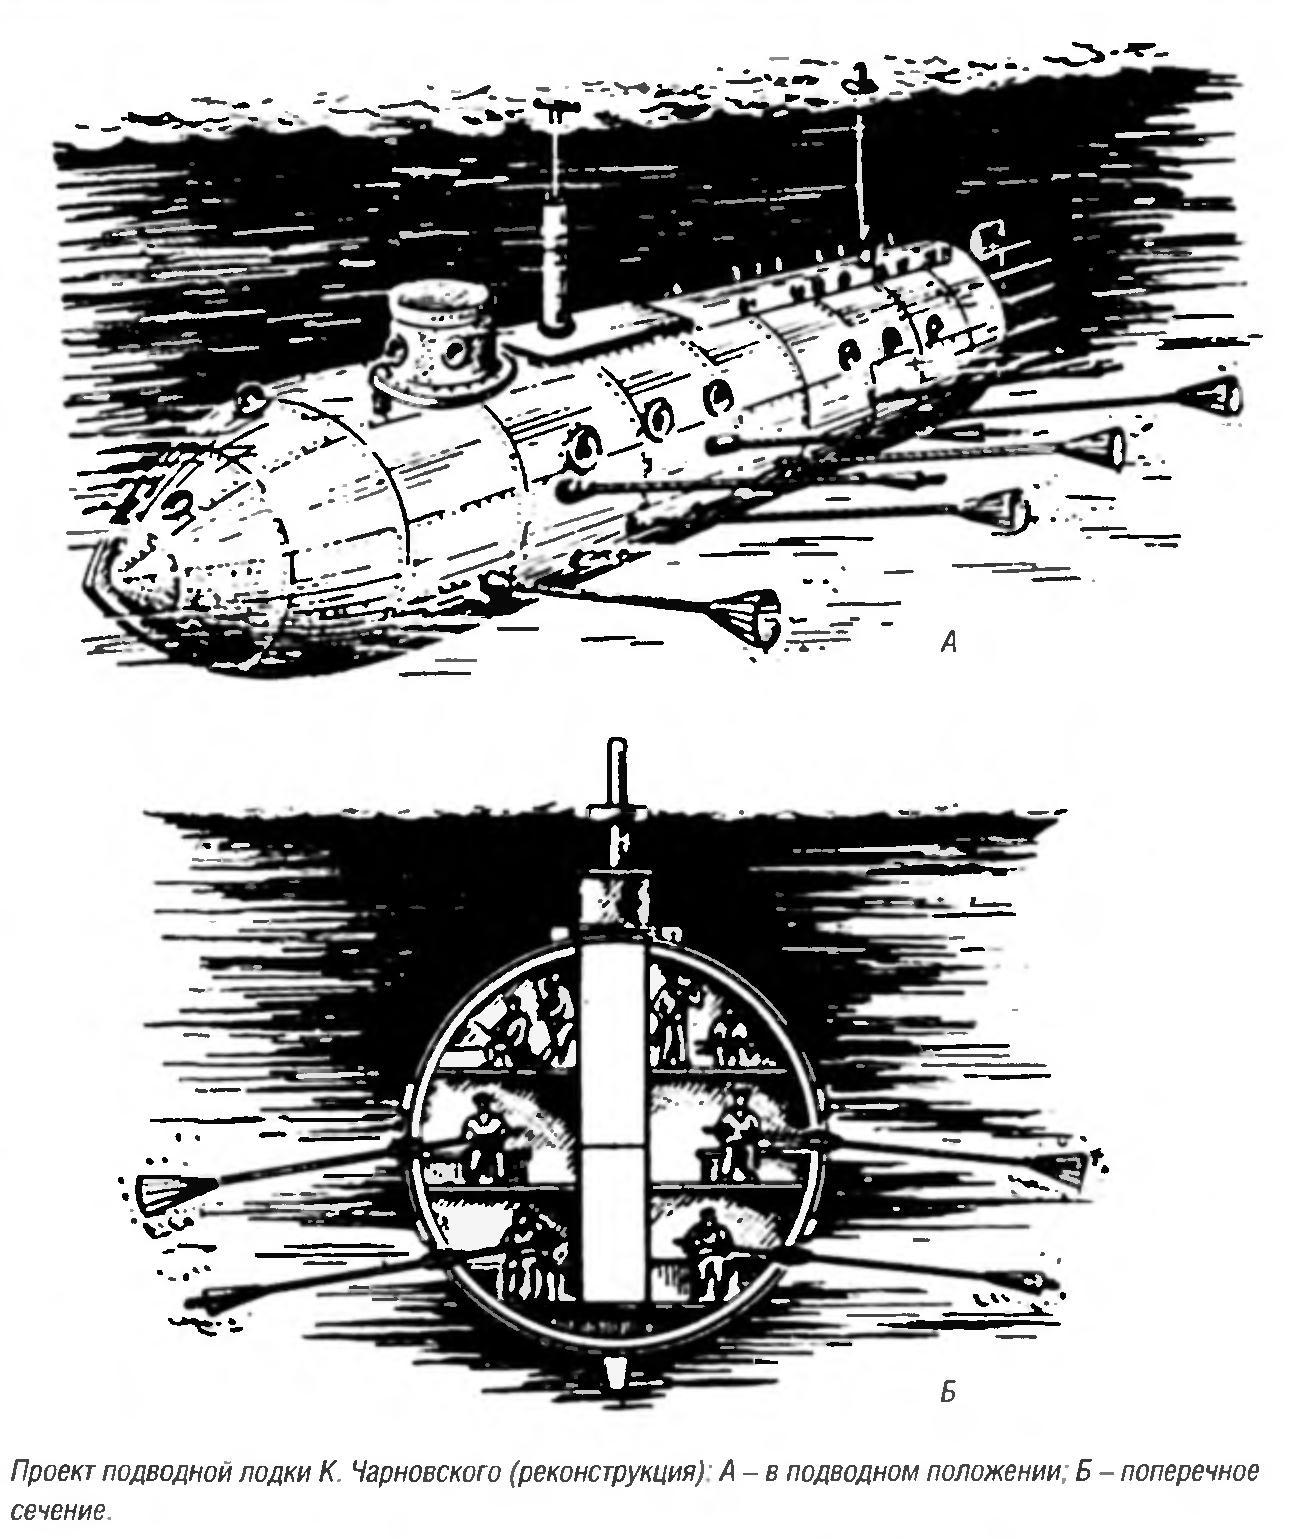 Первая ракетная подводная лодка